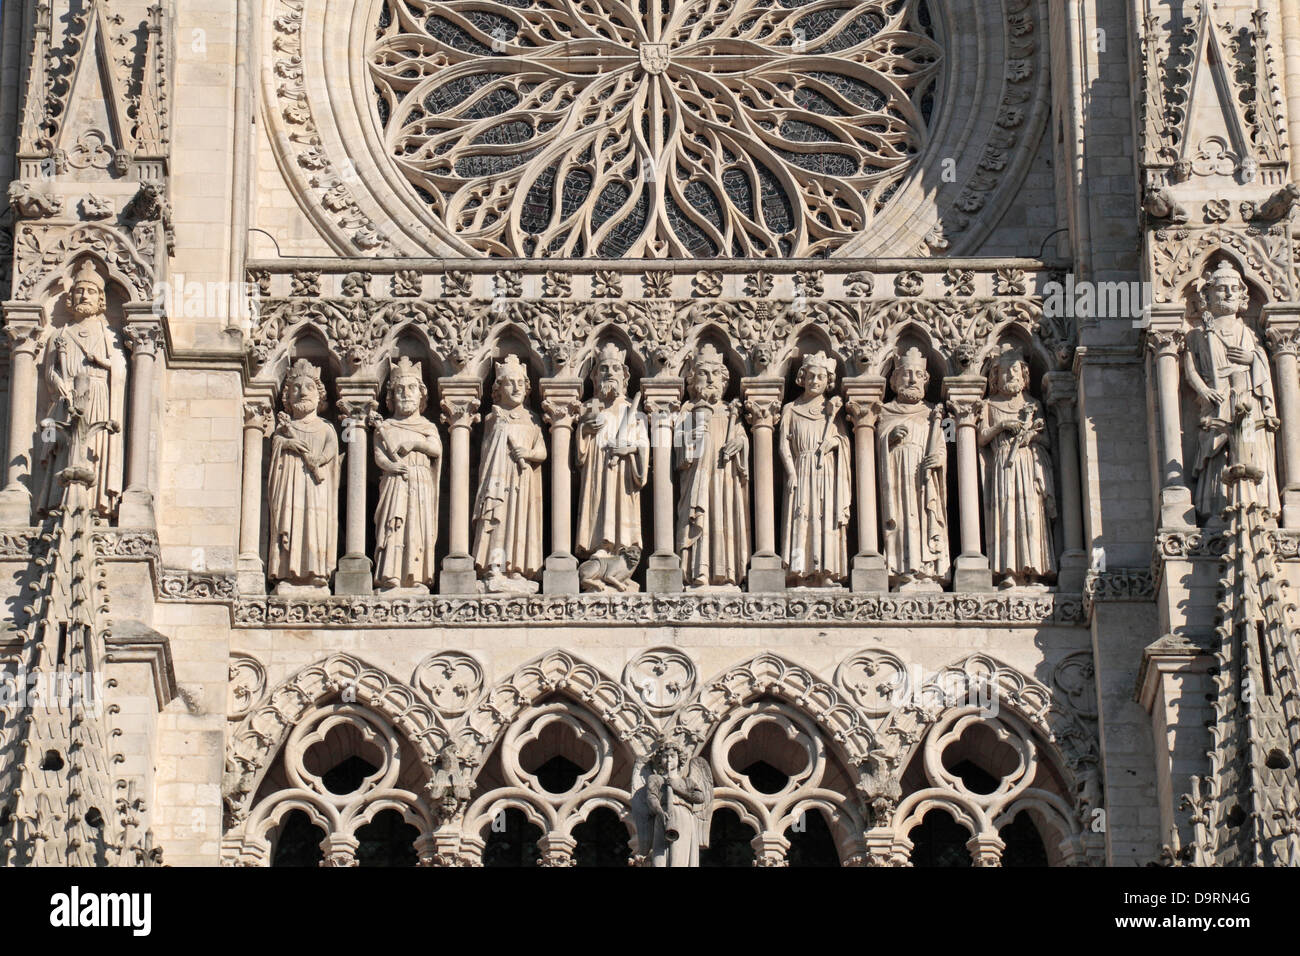 Dettaglio sopra la porta principale della Cattedrale di Nostra Signora di Amiens (Cattedrale di Amiens), Amiens, Somme Picardia, Francia. Foto Stock